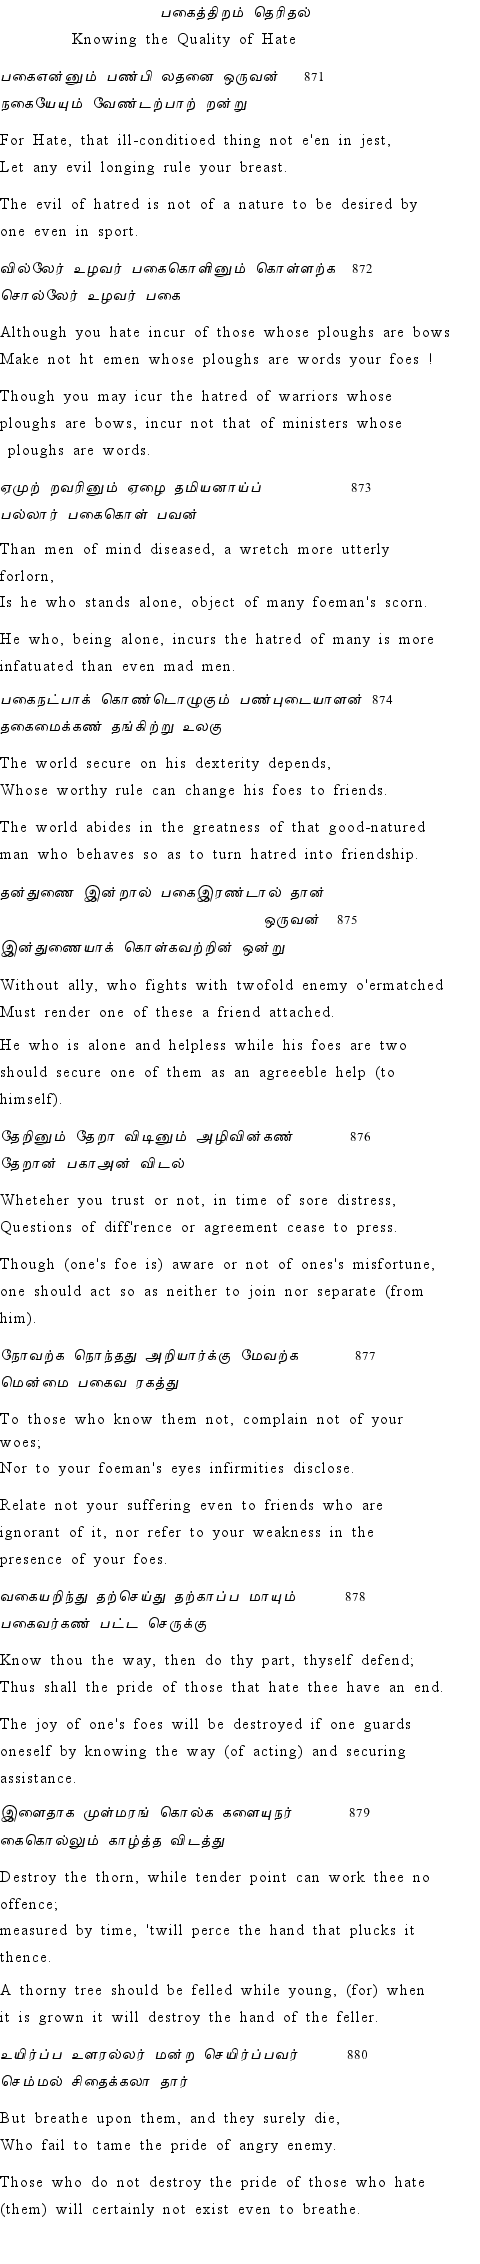 Text of Adhikaram 88